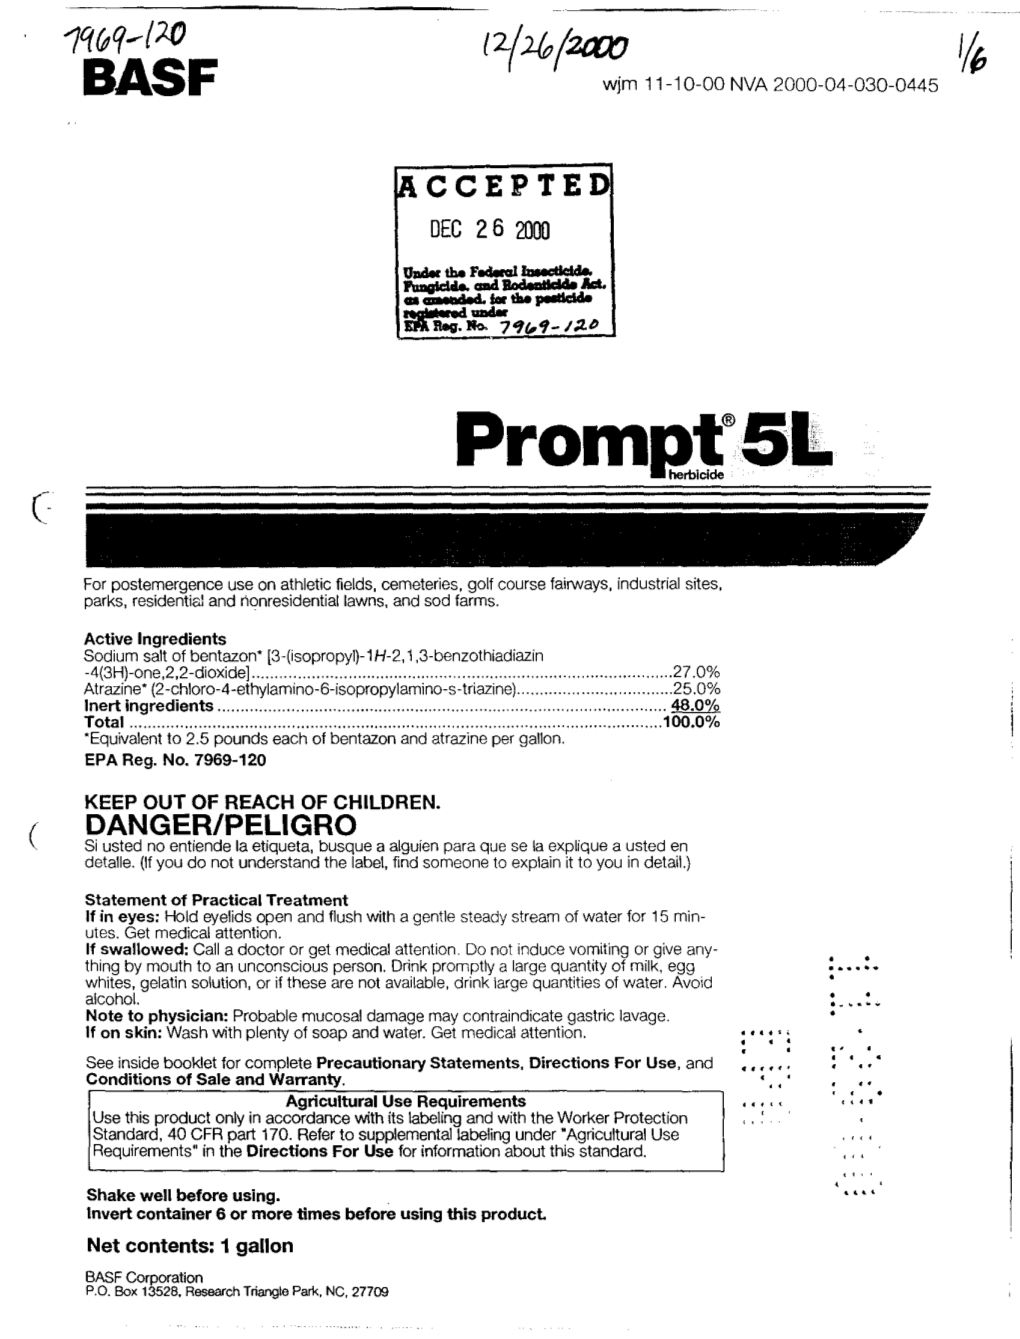 U.S. EPA, Pesticide Product Label, , 12/26/2000